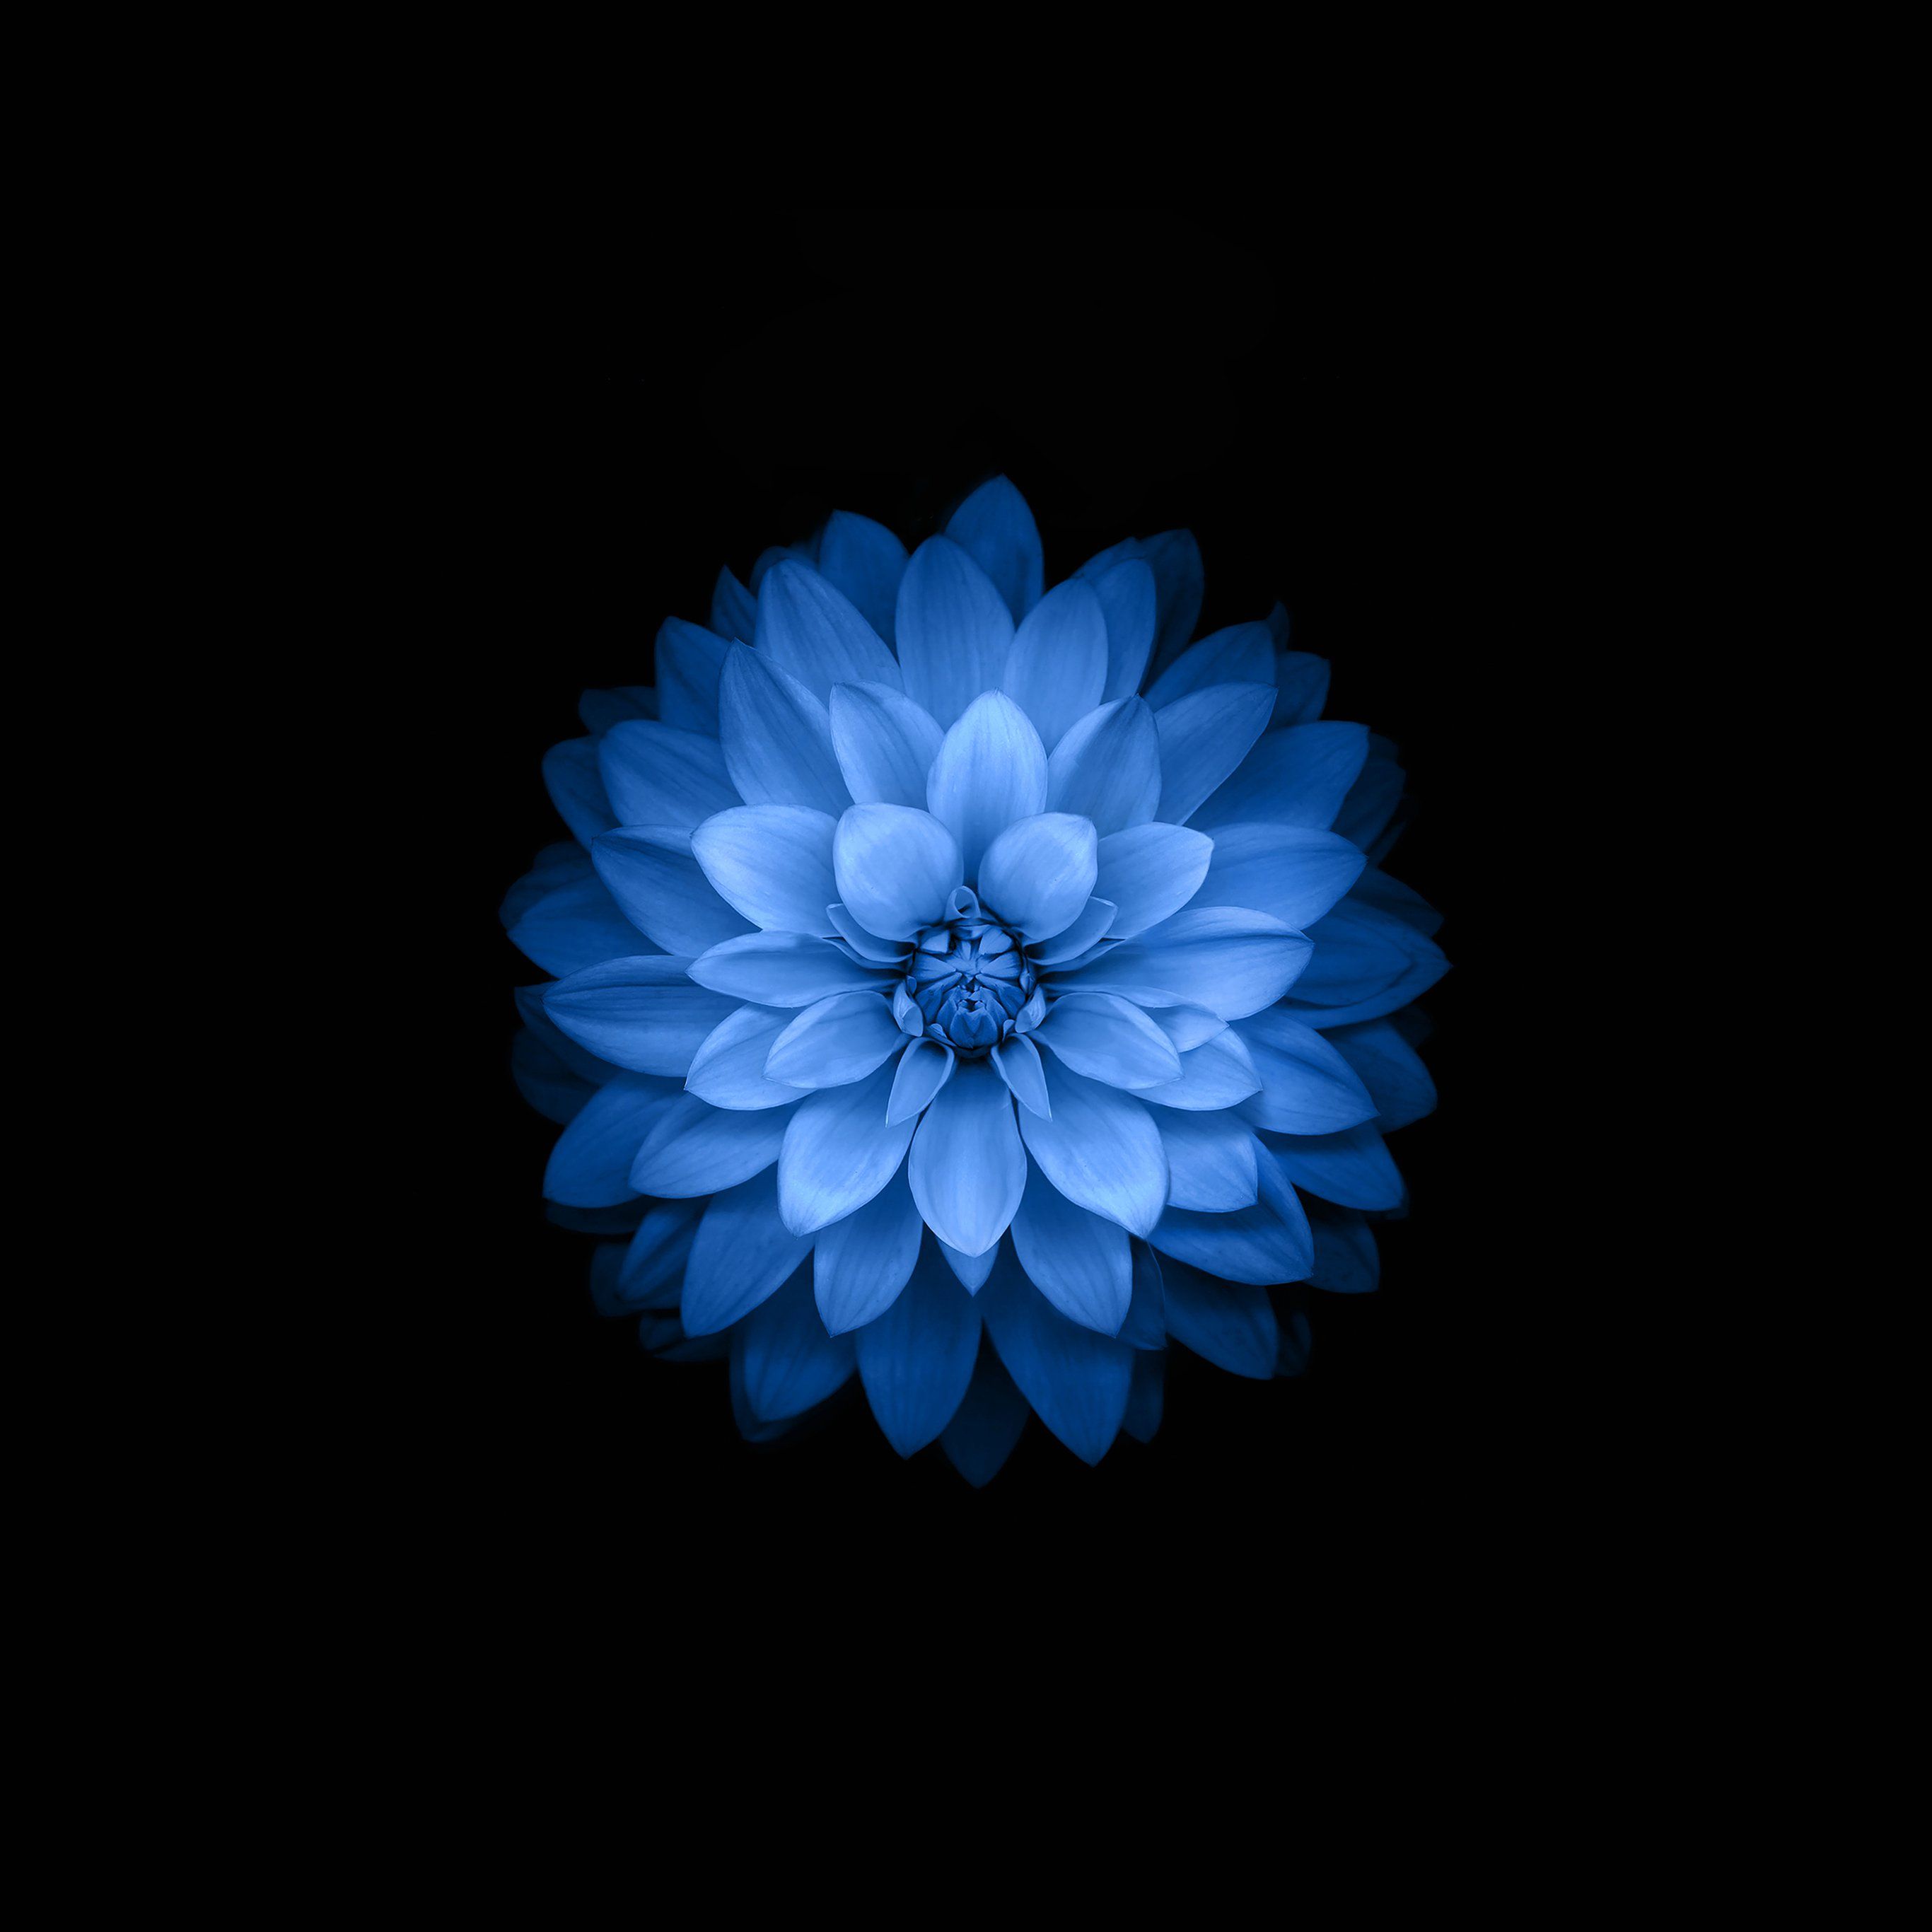 Dark Flowers Desktop Wallpapers  Top Free Dark Flowers Desktop Backgrounds   WallpaperAccess